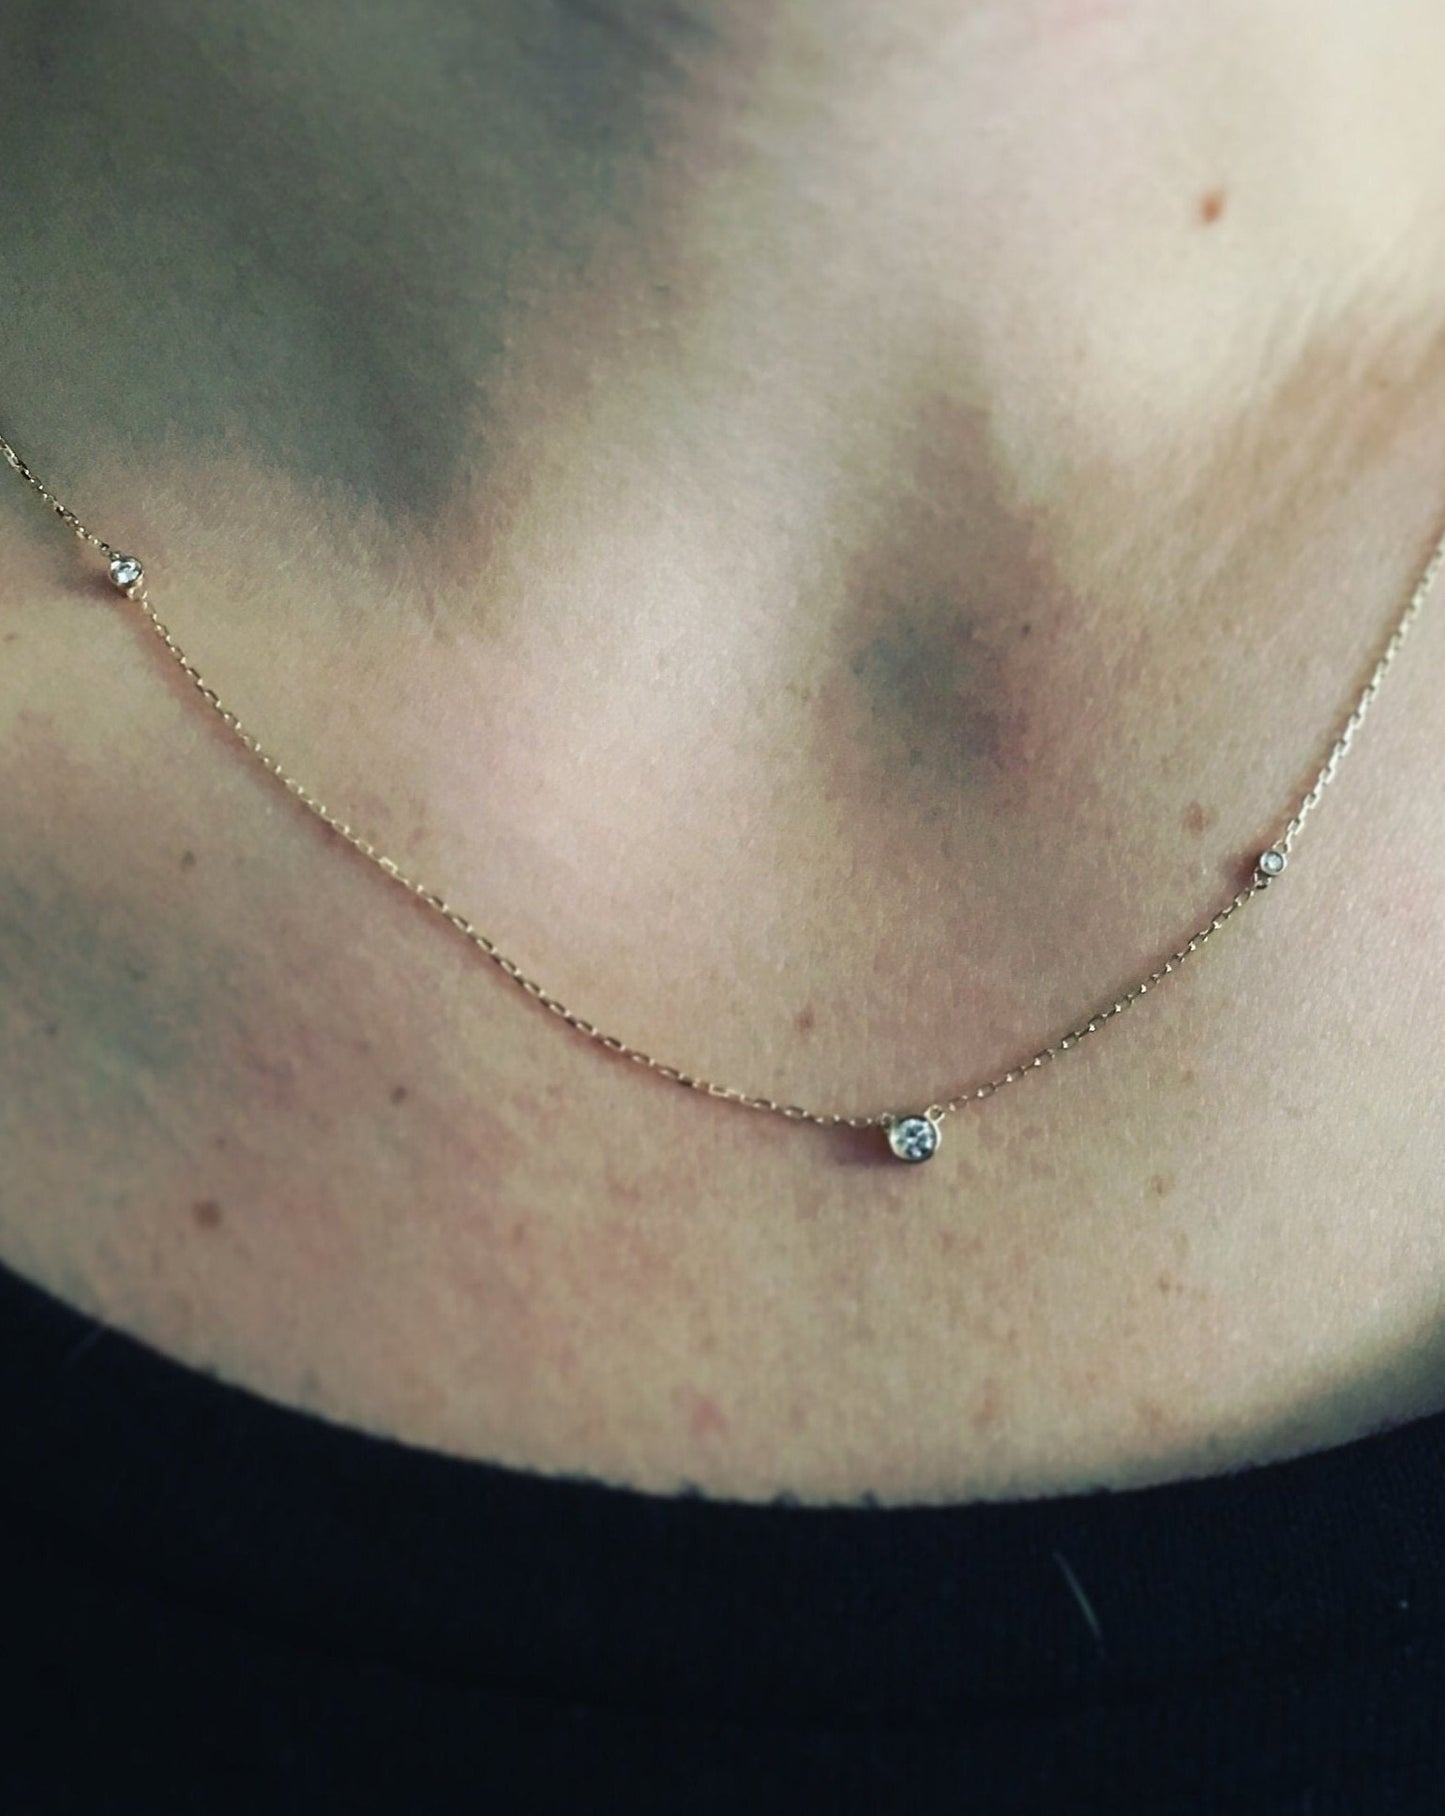 14kt Gold Eternal Love Diamond Pendant shown on neck